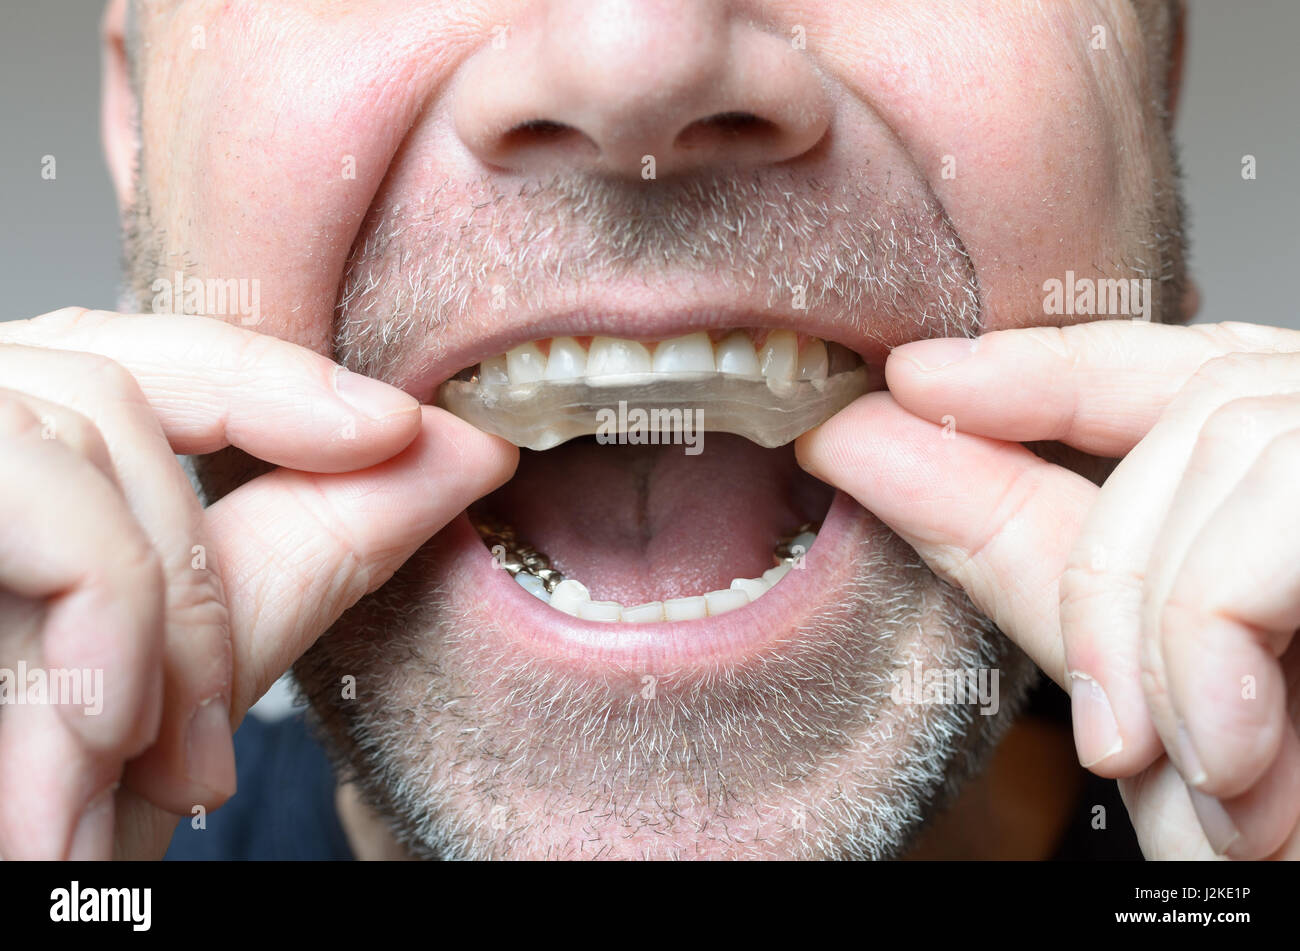 Placa para Protector Bucal - Dental Link